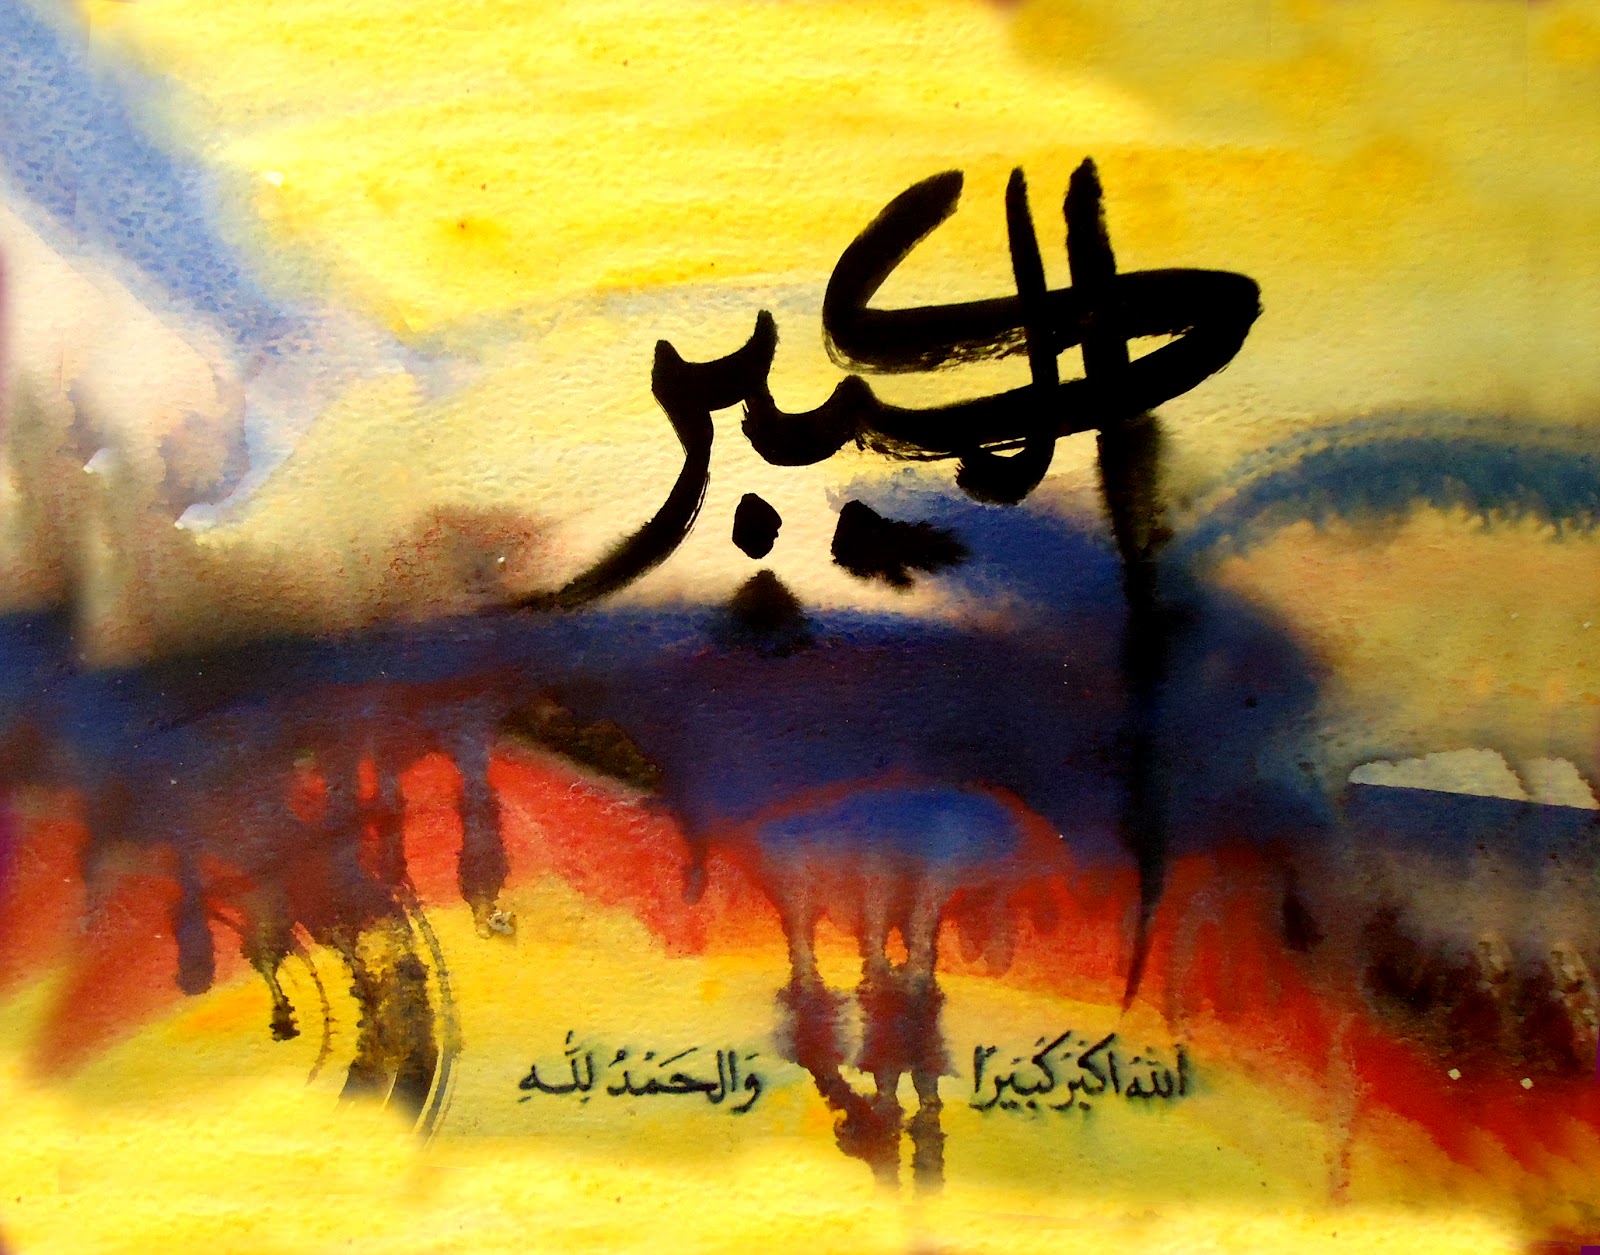 Kaligrafi-arabic calligraphy: OBRAL KALIGRAFI- kaligrafi 